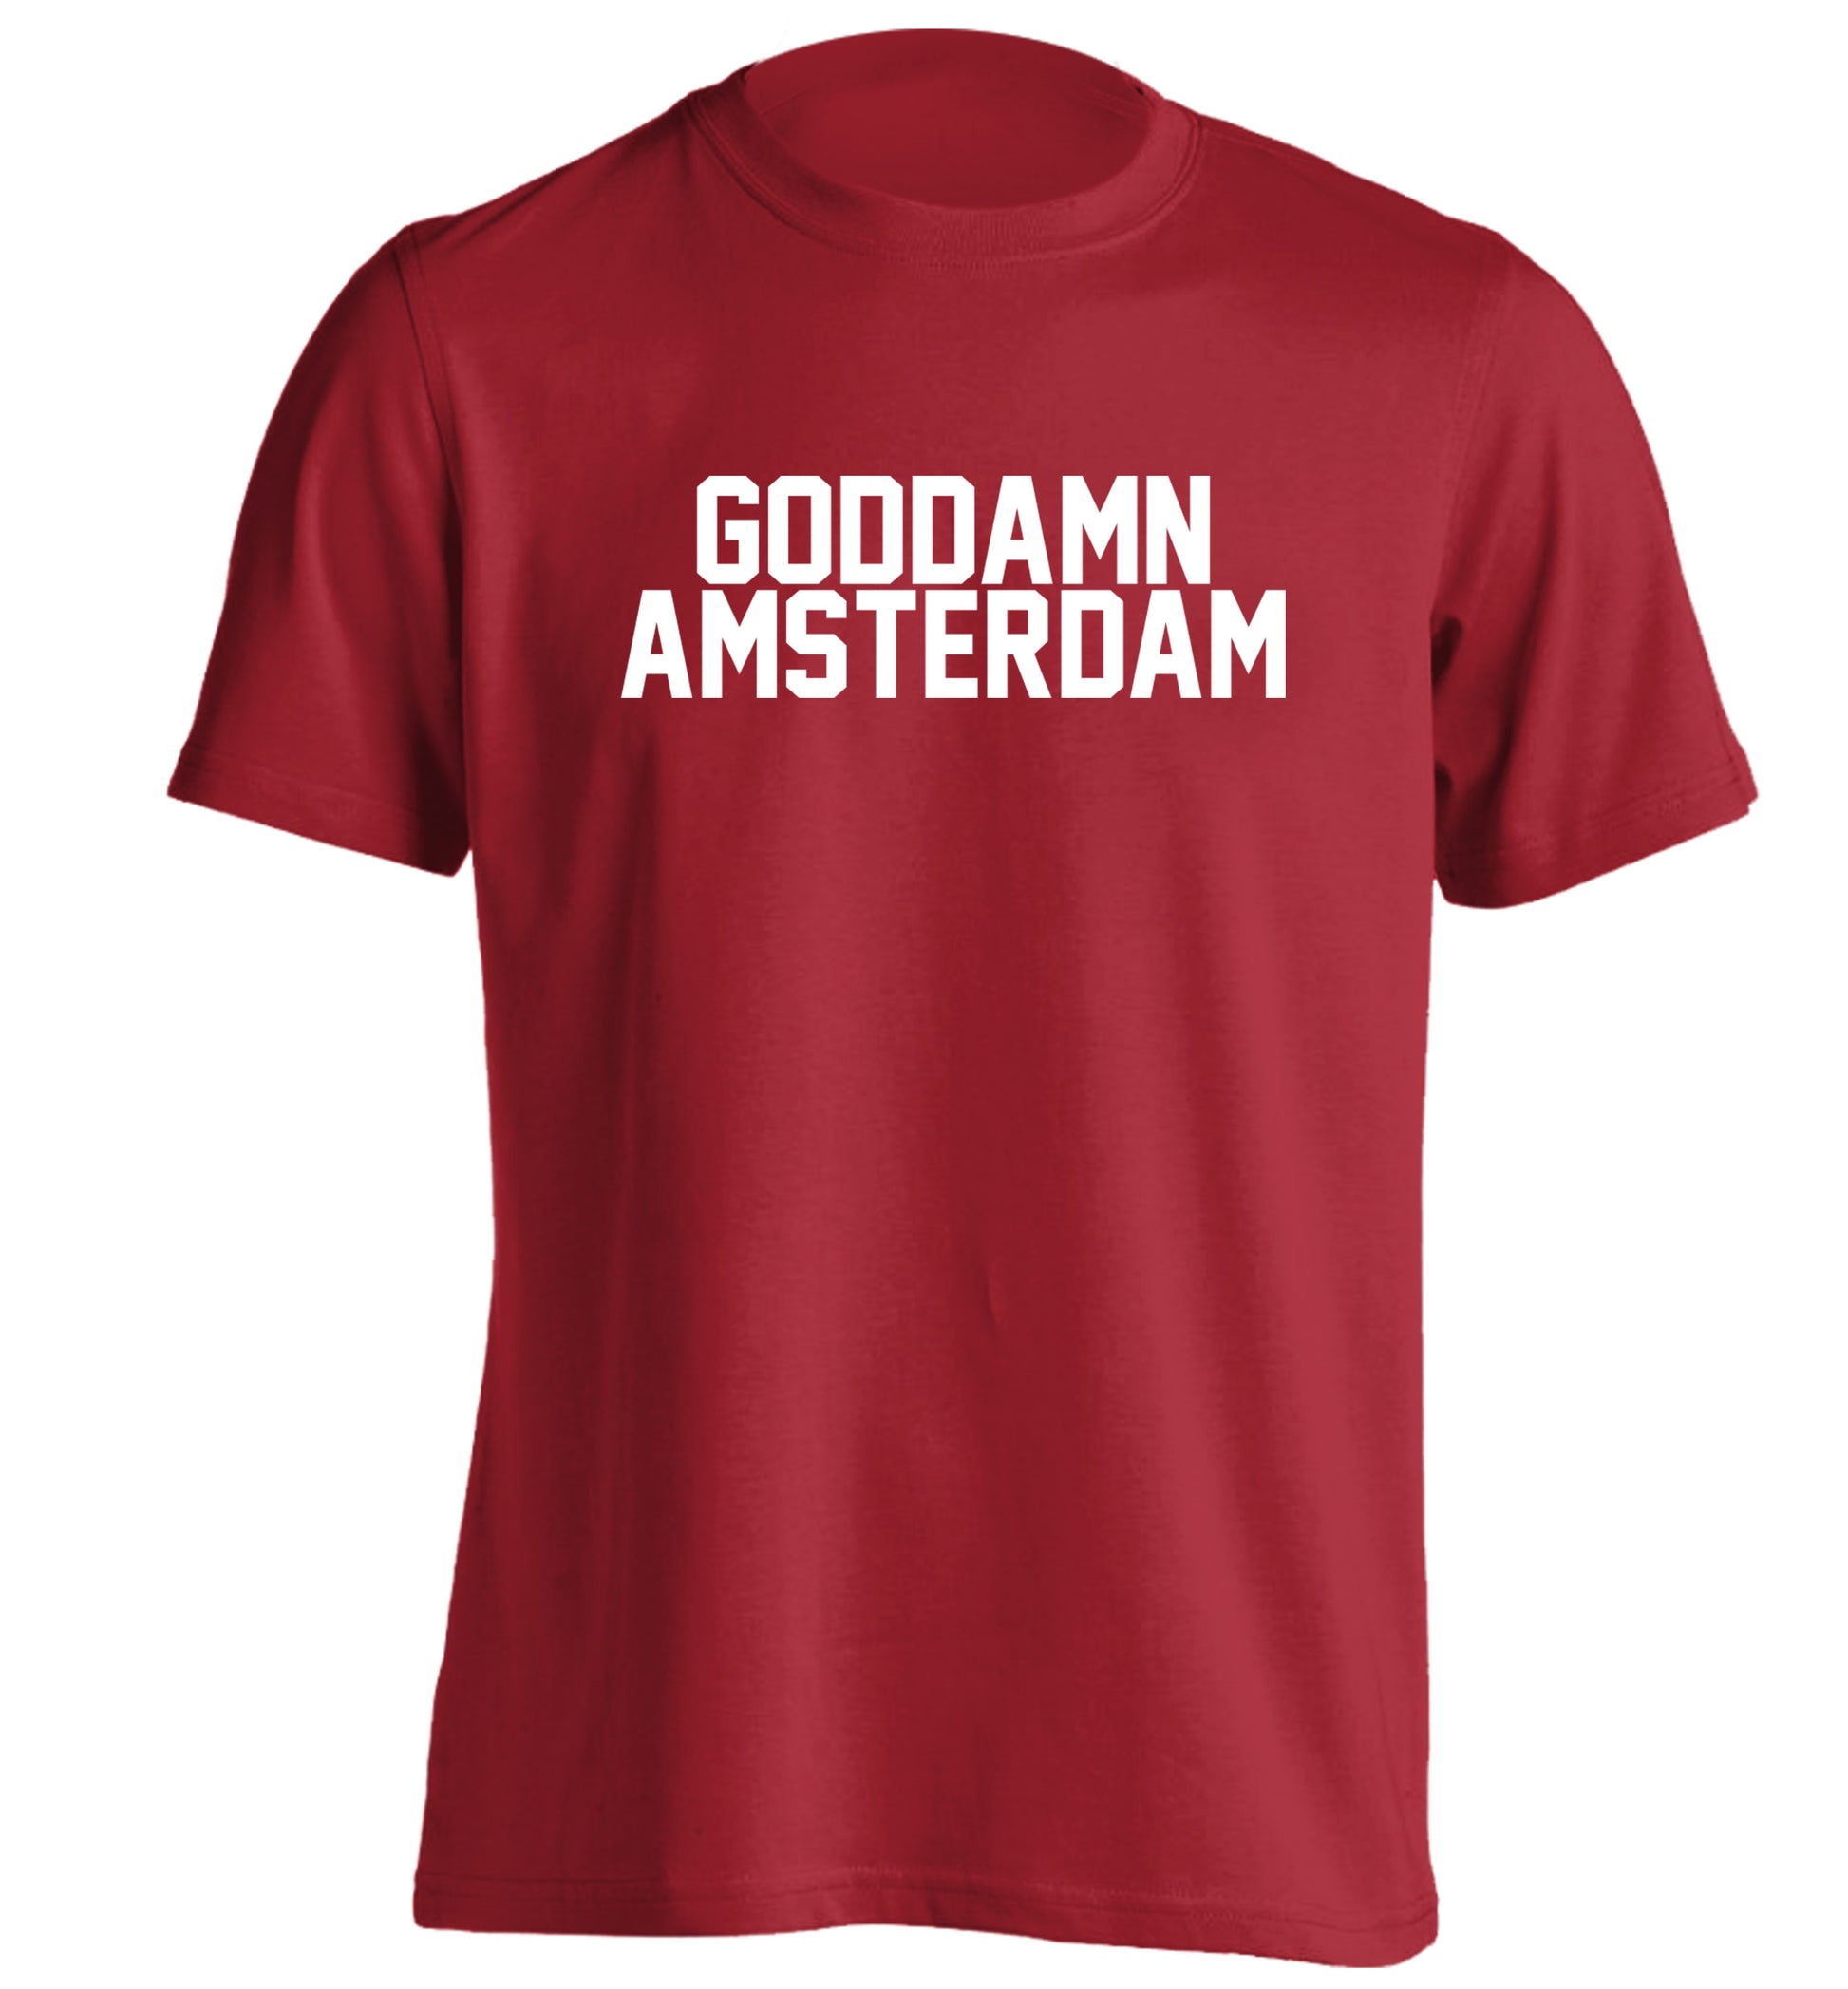 Goddamn Amsterdam adults unisex red Tshirt 2XL